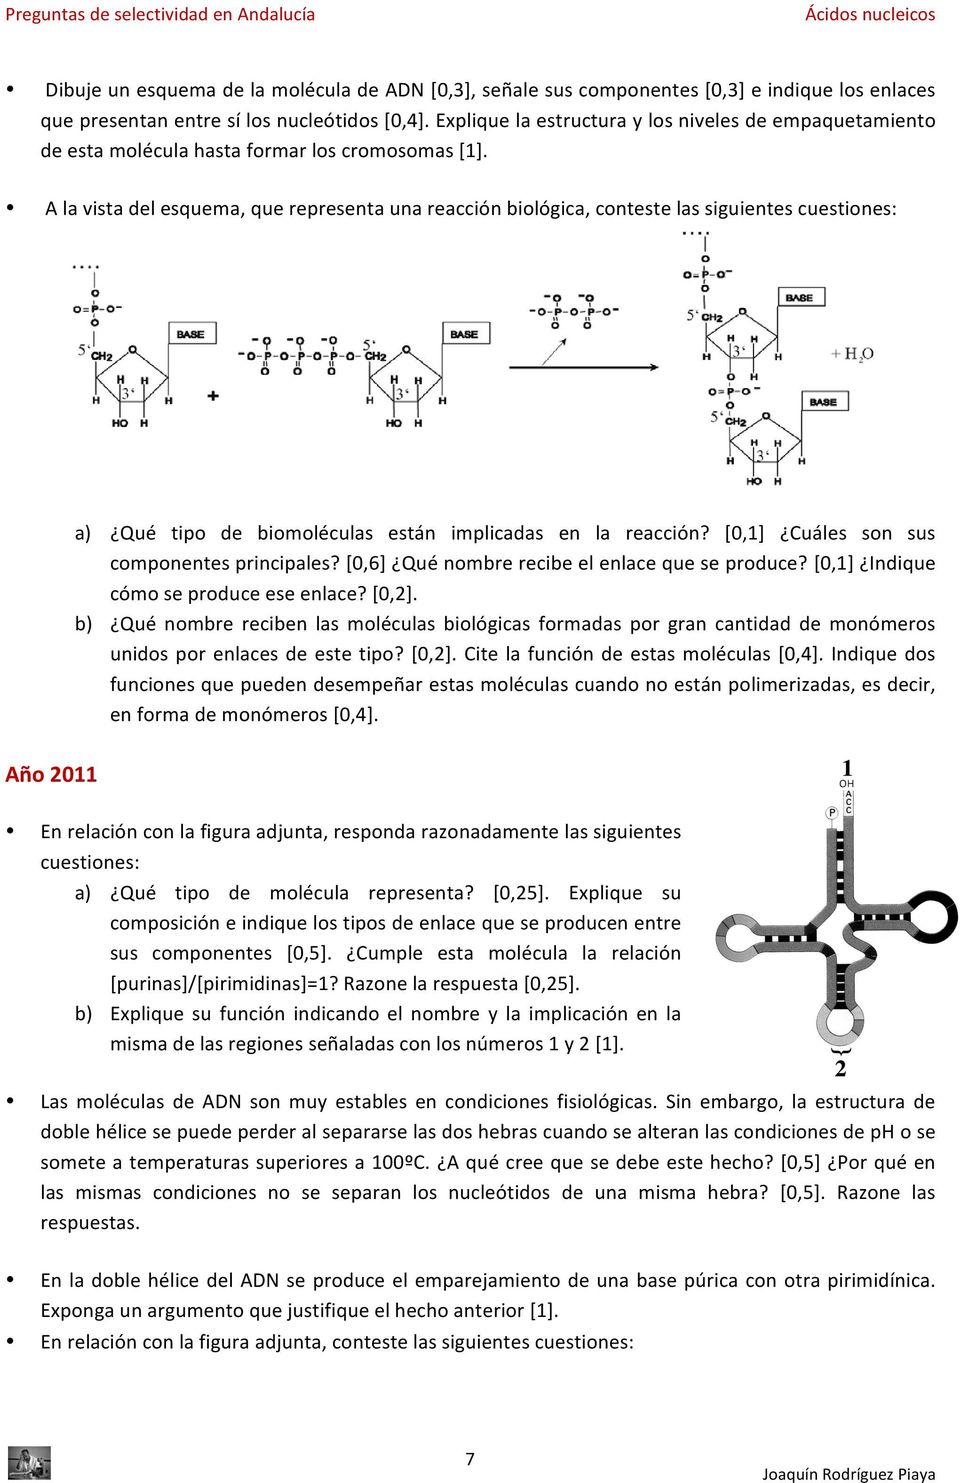 A la vista del esquema, que representa una reacción biológica, conteste las siguientes cuestiones: a) Qué tipo de biomoléculas están implicadas en la reacción?